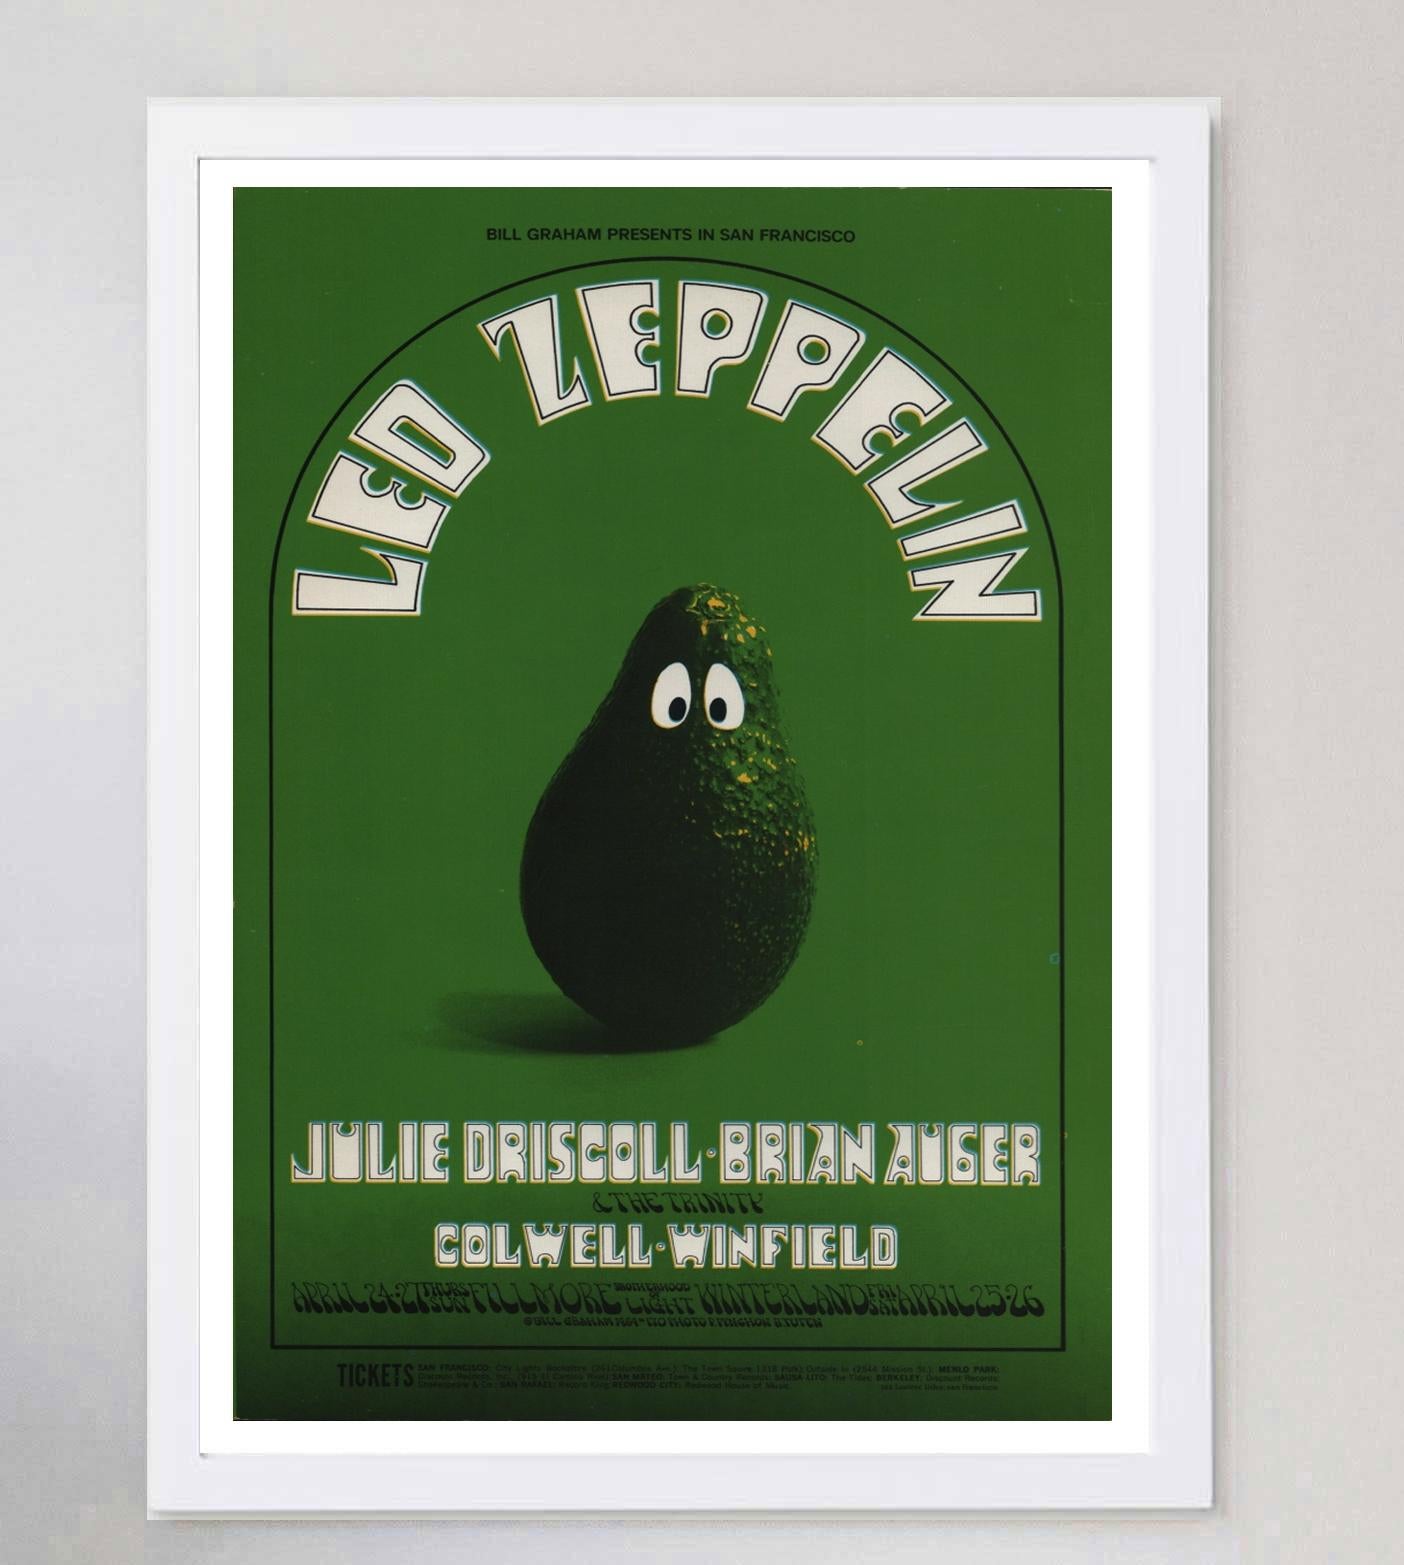 American 1969 Led Zeppelin - Fillmore Original Vintage Poster